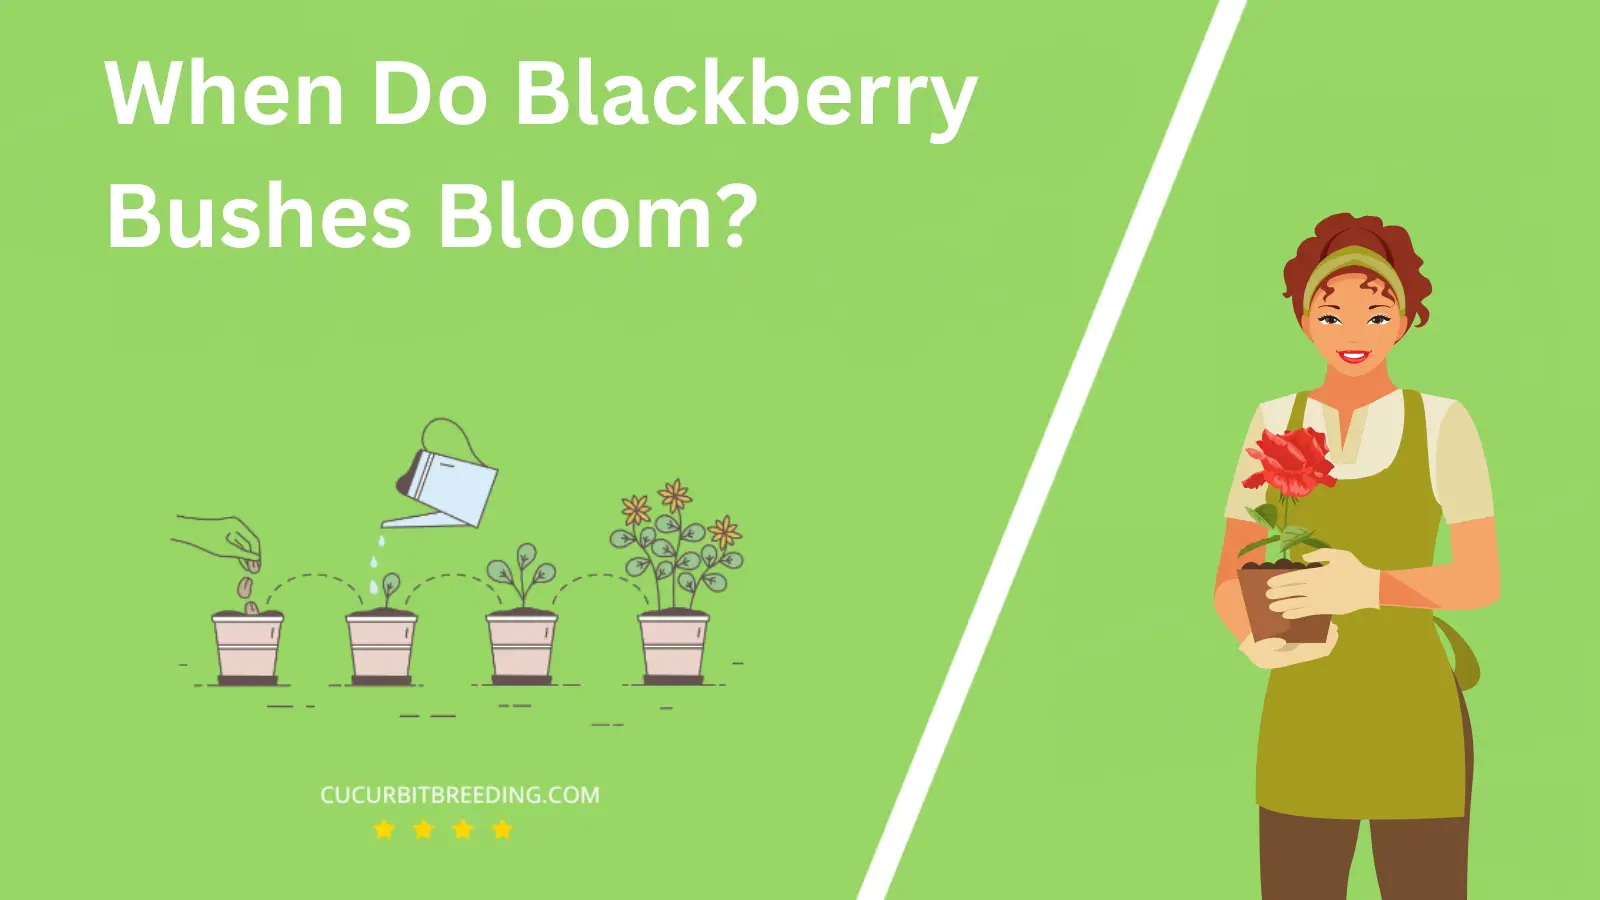 When Do Blackberry Bushes Bloom?